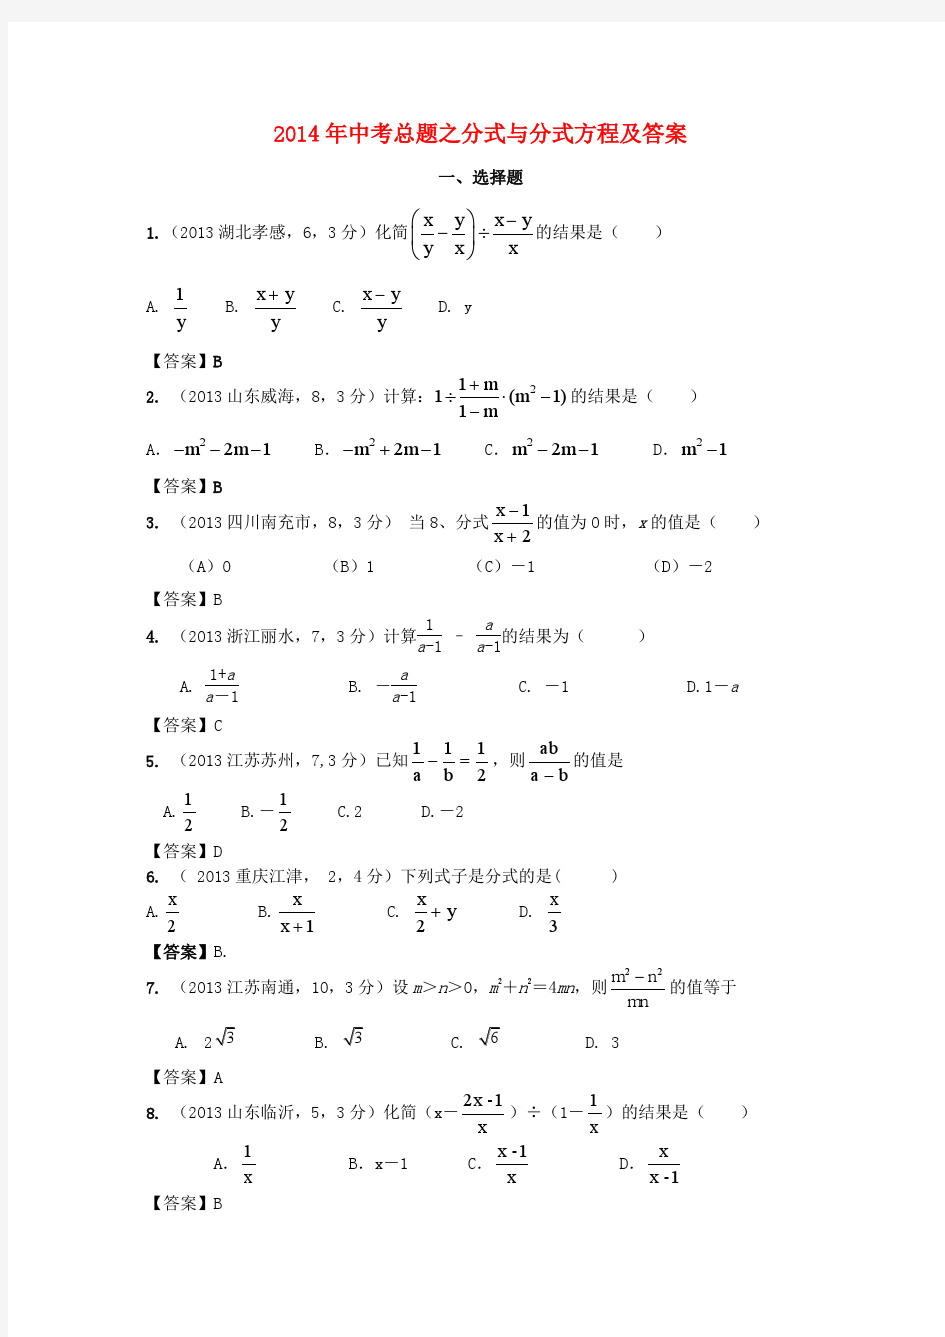 2014年中考总题之分式与分式方程及答案